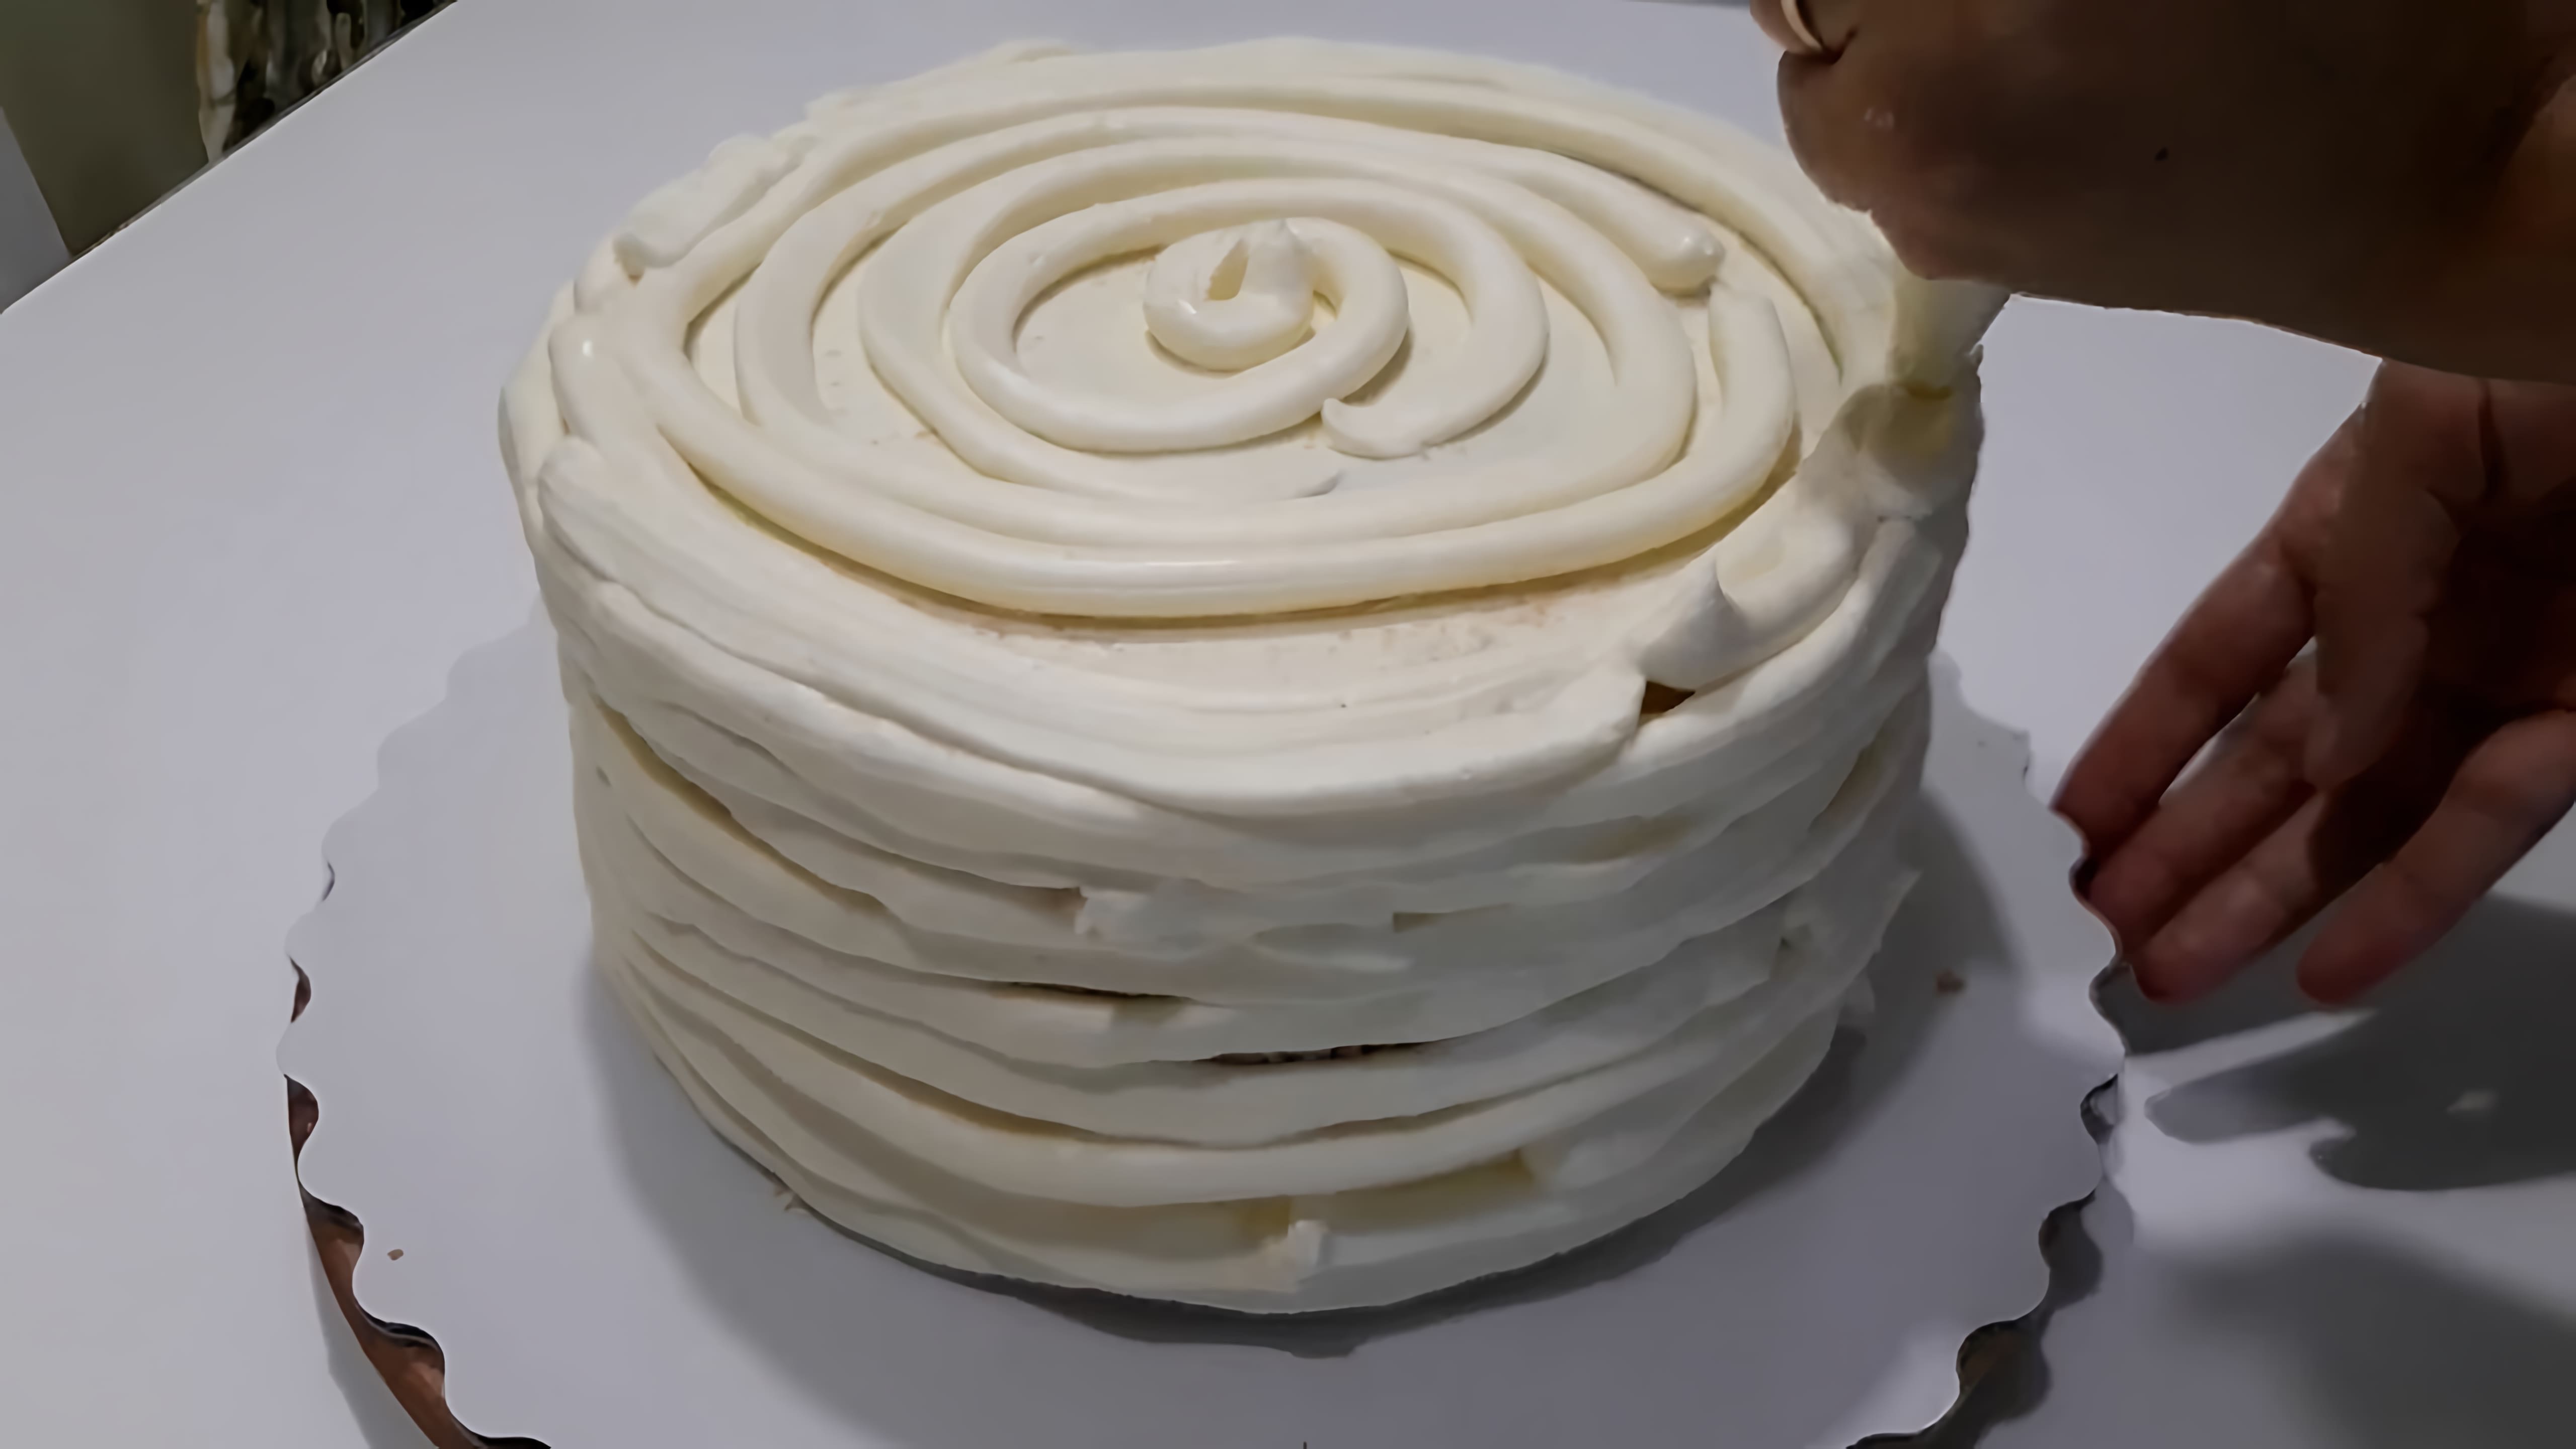 В этом видео показано, как приготовить крем чиз для выравнивания торта